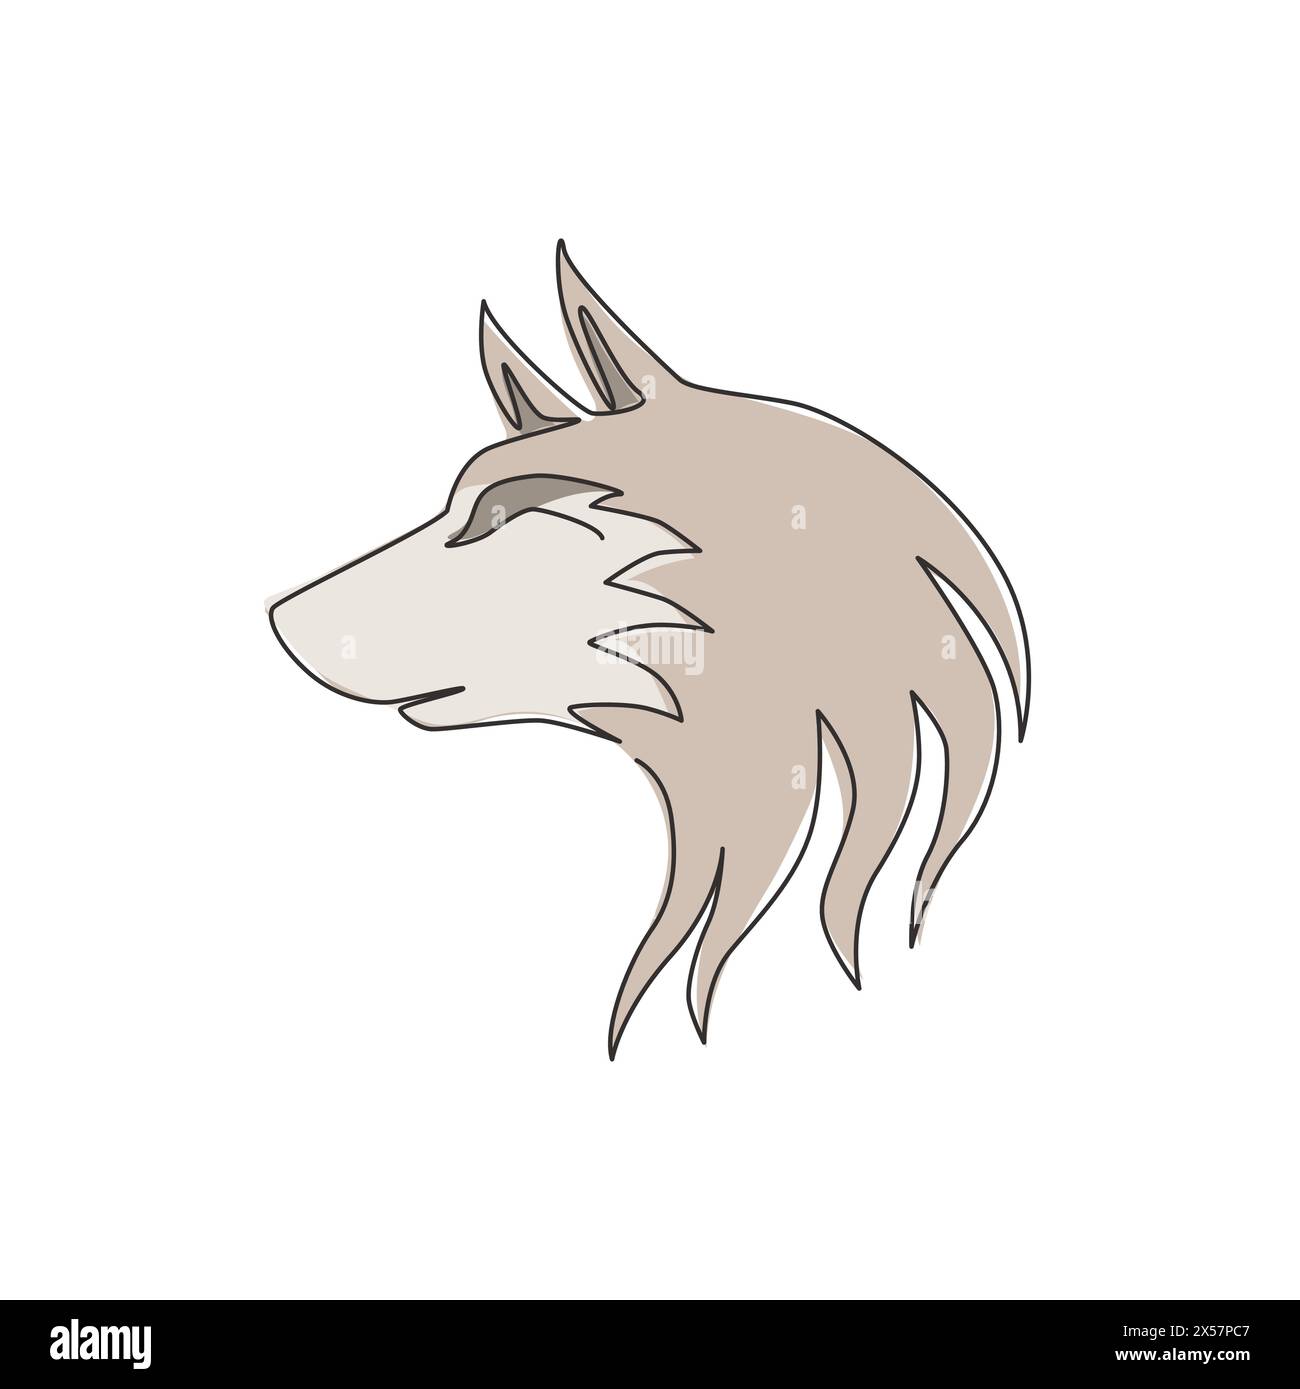 Un dessin de ligne continue de tête de loup dangereuse pour l'identité de logo d'entreprise. Concept d'emblème de mascotte de loups pour icône de parc de conservation. Single tendance Illustration de Vecteur